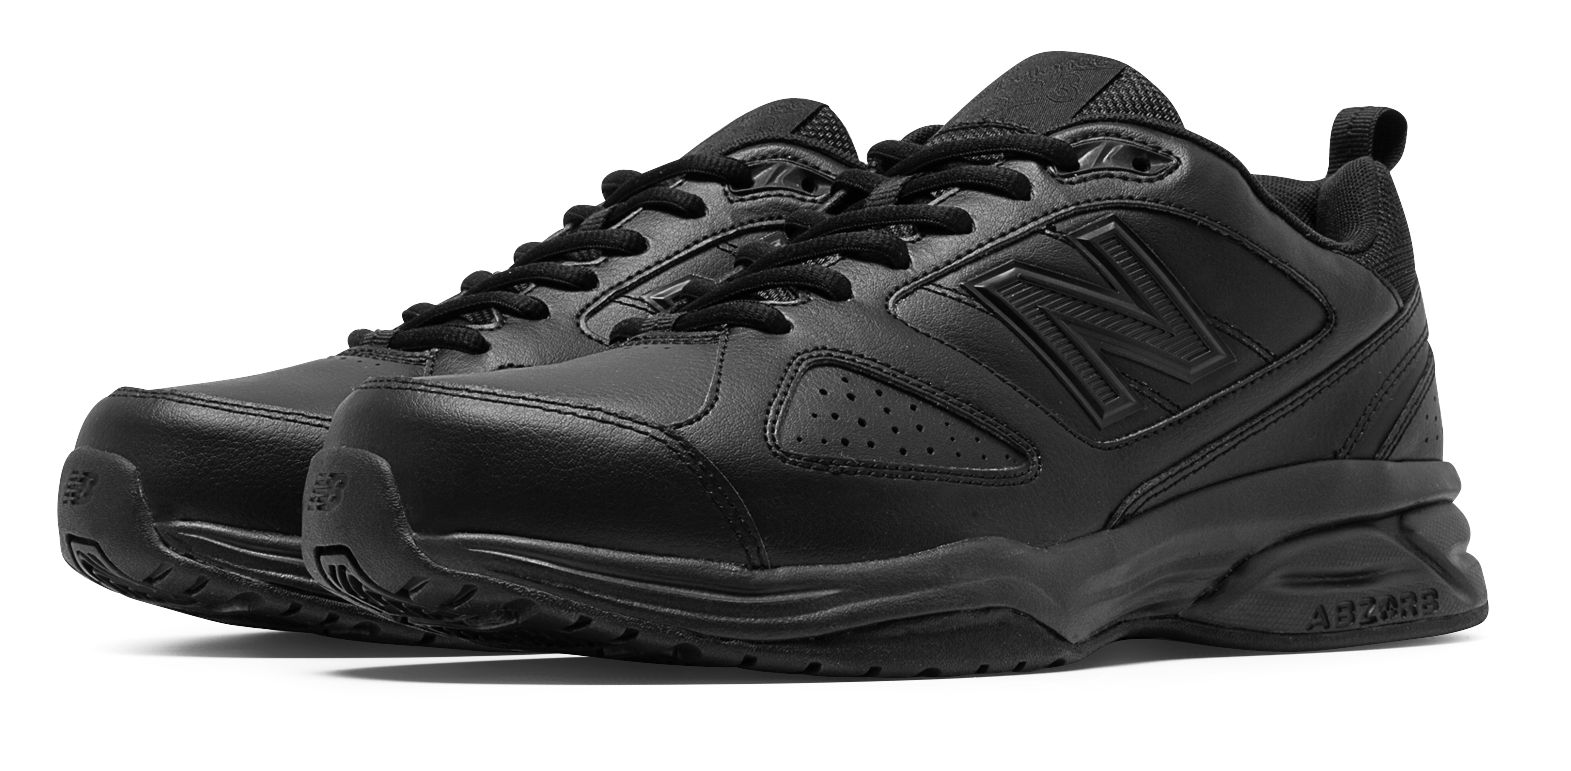 New Balance Men's 623v3 Shoes Black - image 1 of 4